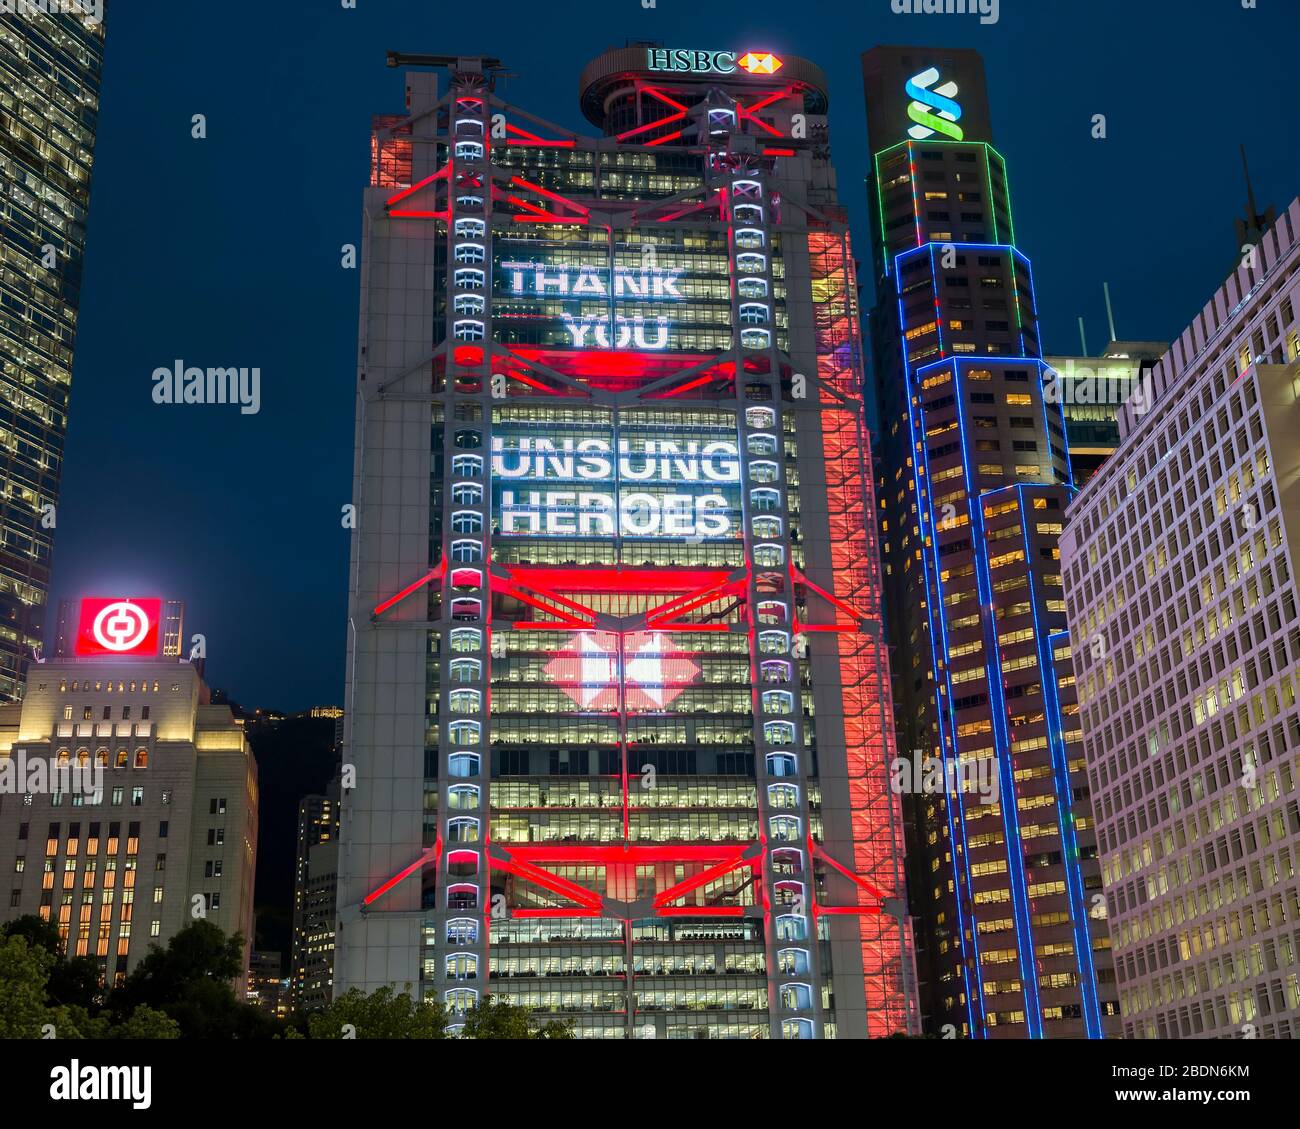 El banco HSBC, mostrando mensajes de agradecimiento a médicos y enfermeros por su ayuda durante la enfermedad coronavirus (COVID-19), Hong Kong, China. Foto de stock